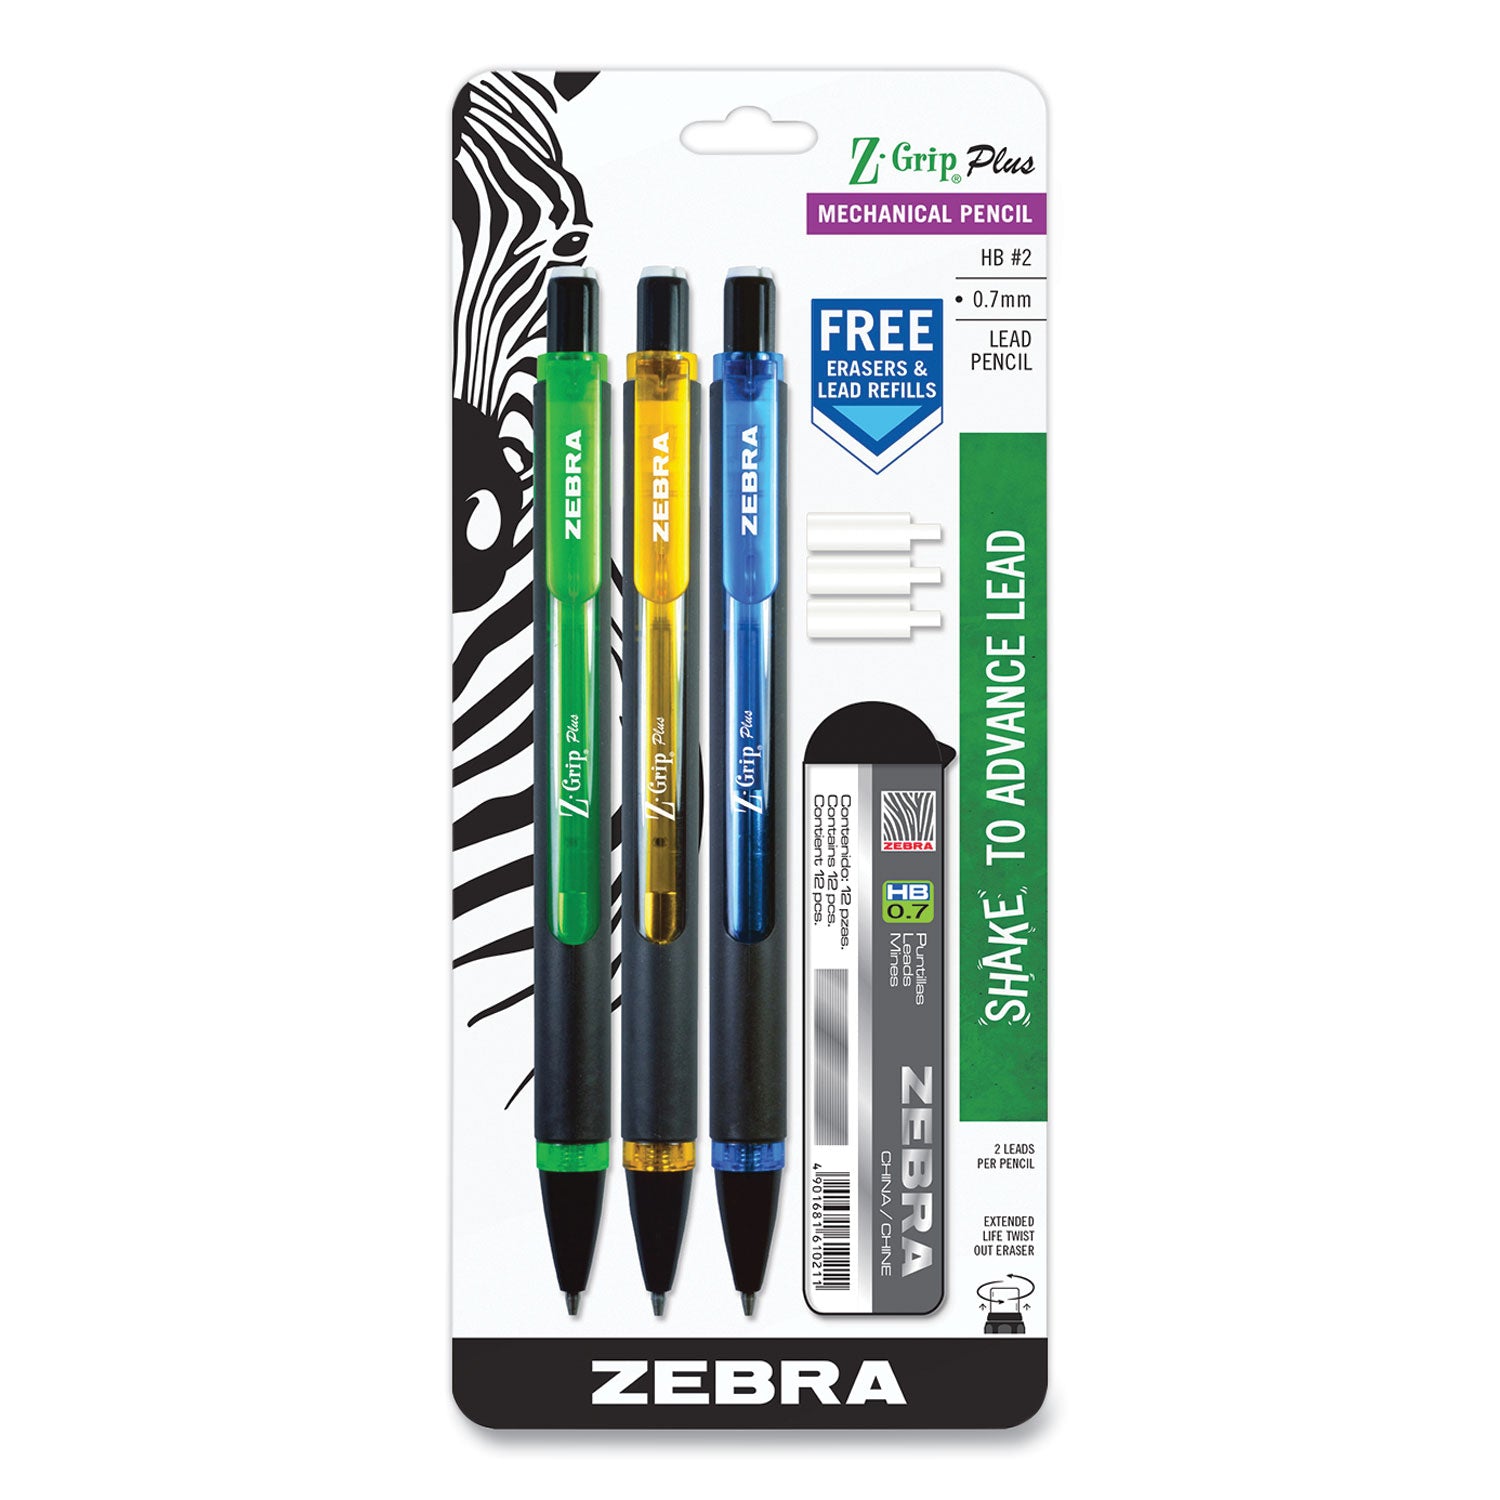 z-grip-plus-mechanical-pencil-07-mm-hb-#2-black-lead-assorted-barrel-colors-3-pack_zeb55403 - 1